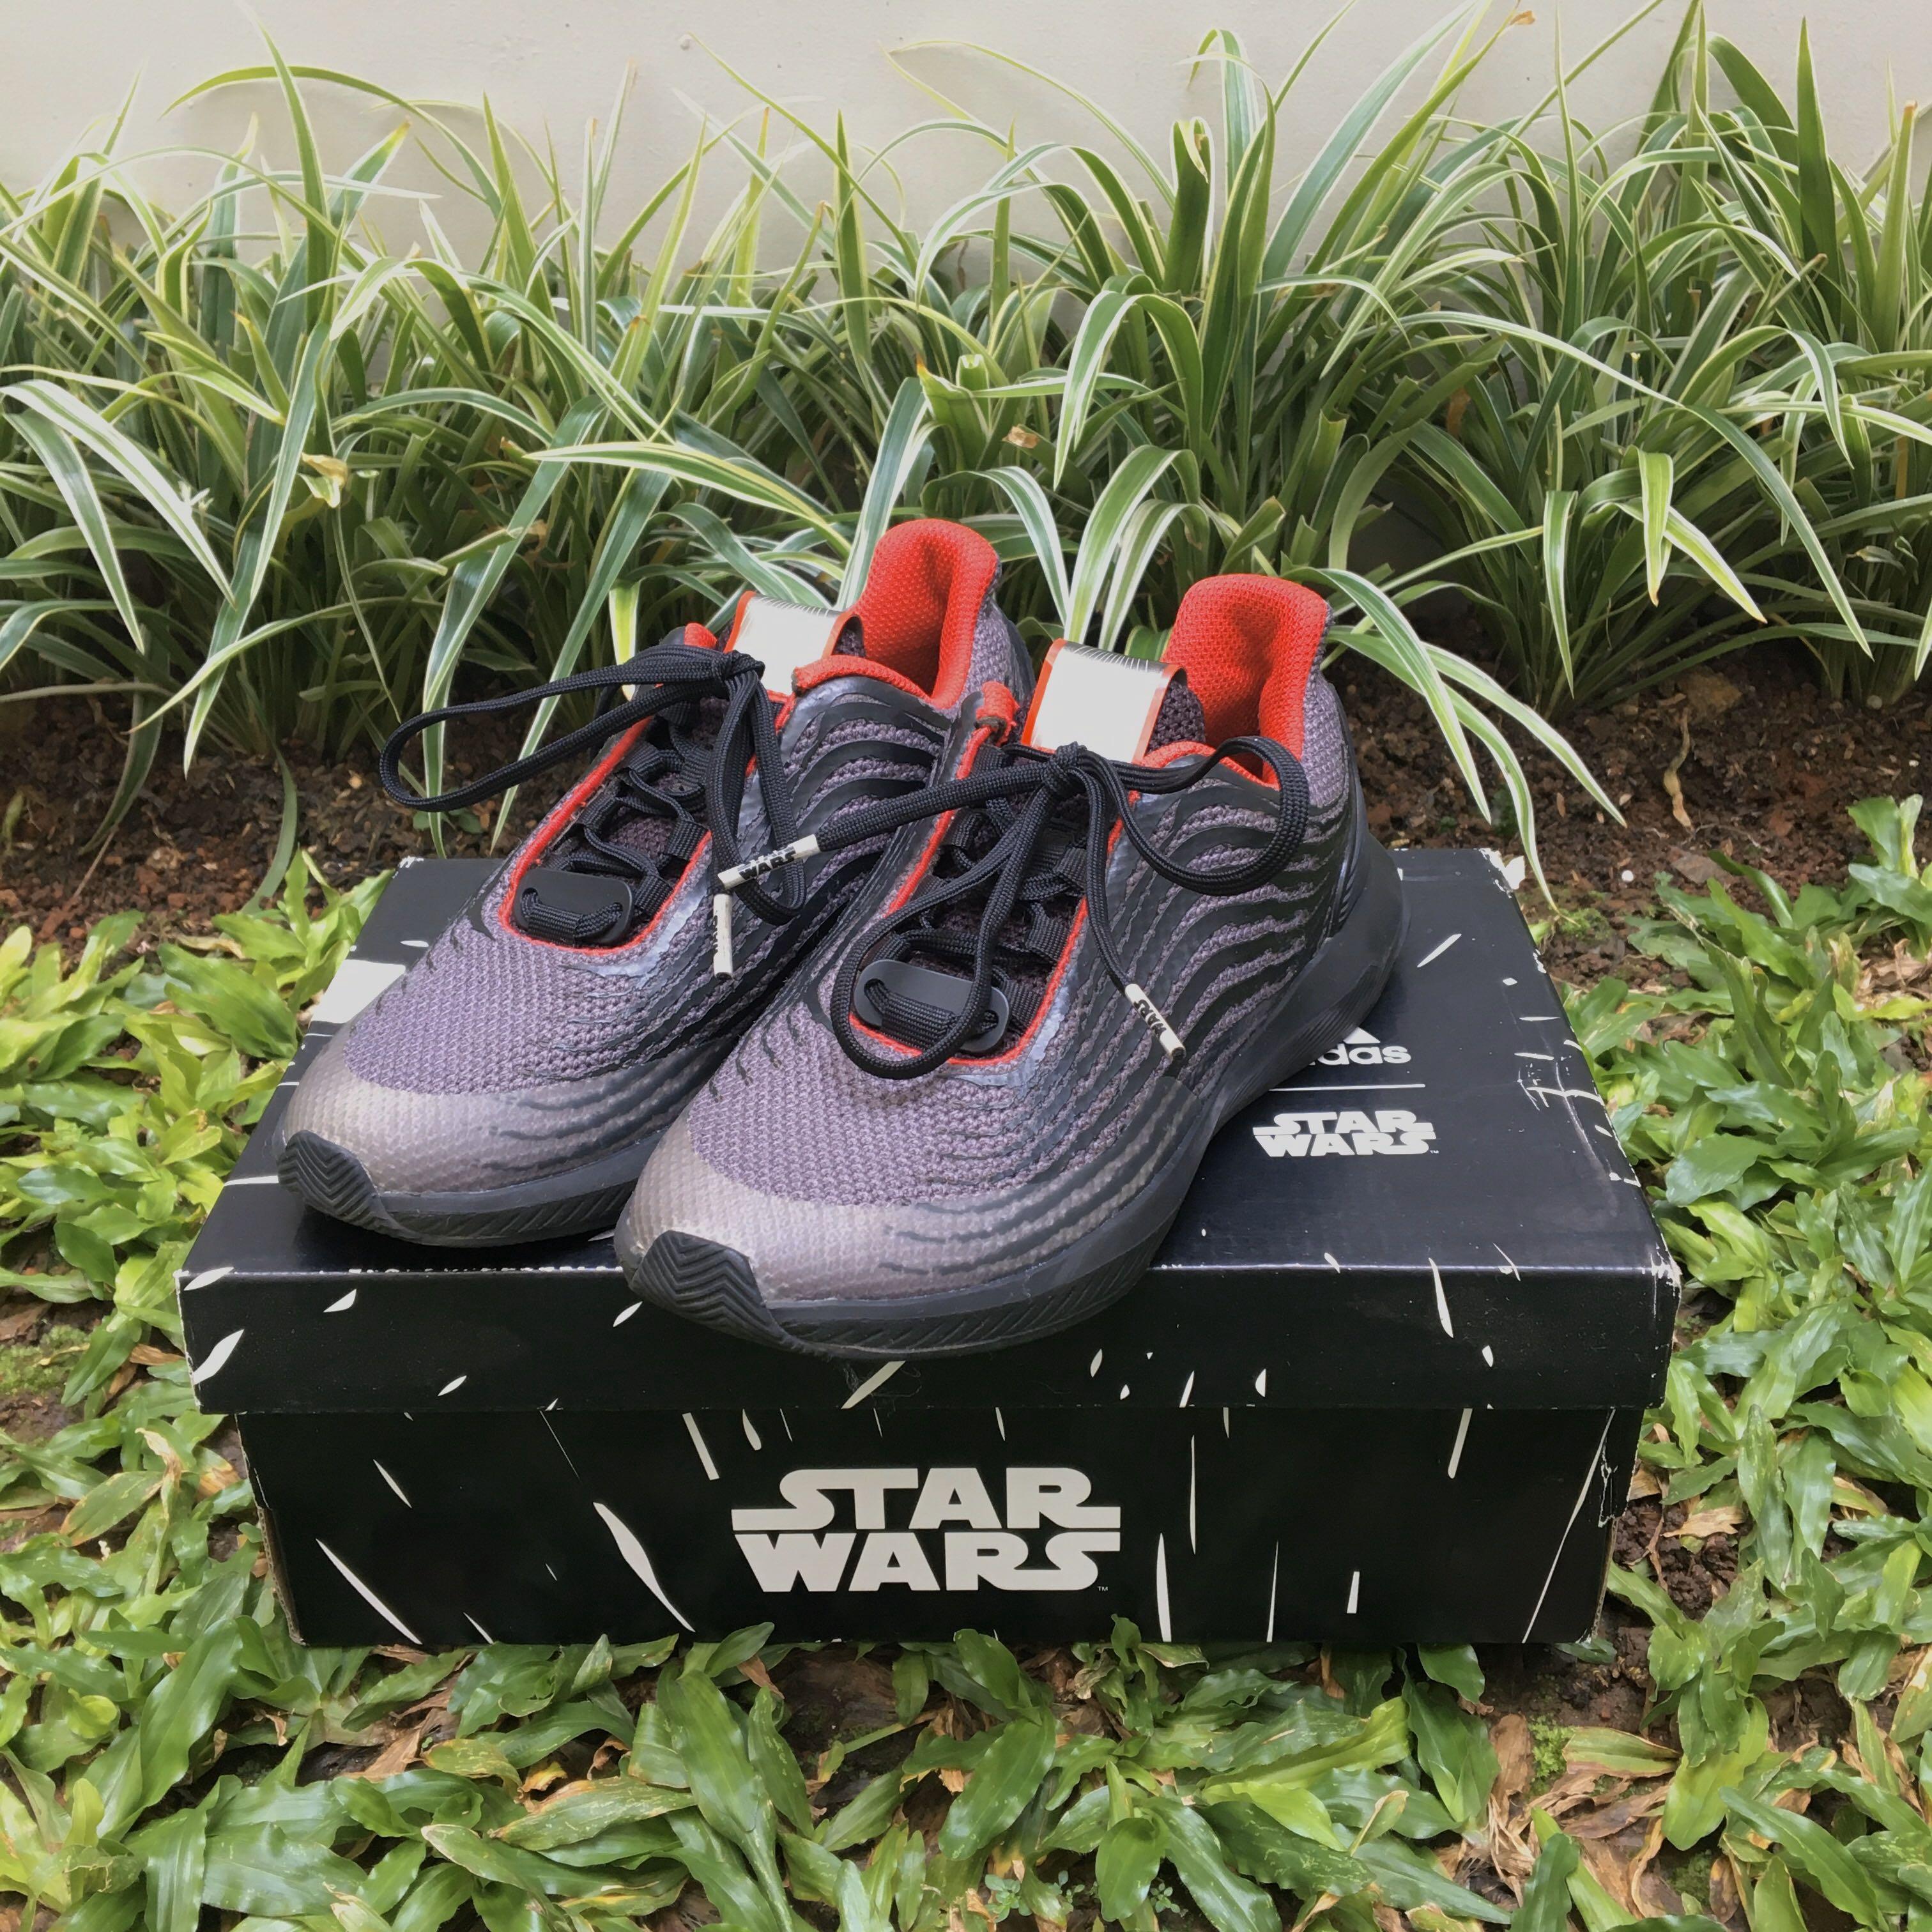 Adidas Star Wars RapidaRun Kids Shoes - Kylo Ren